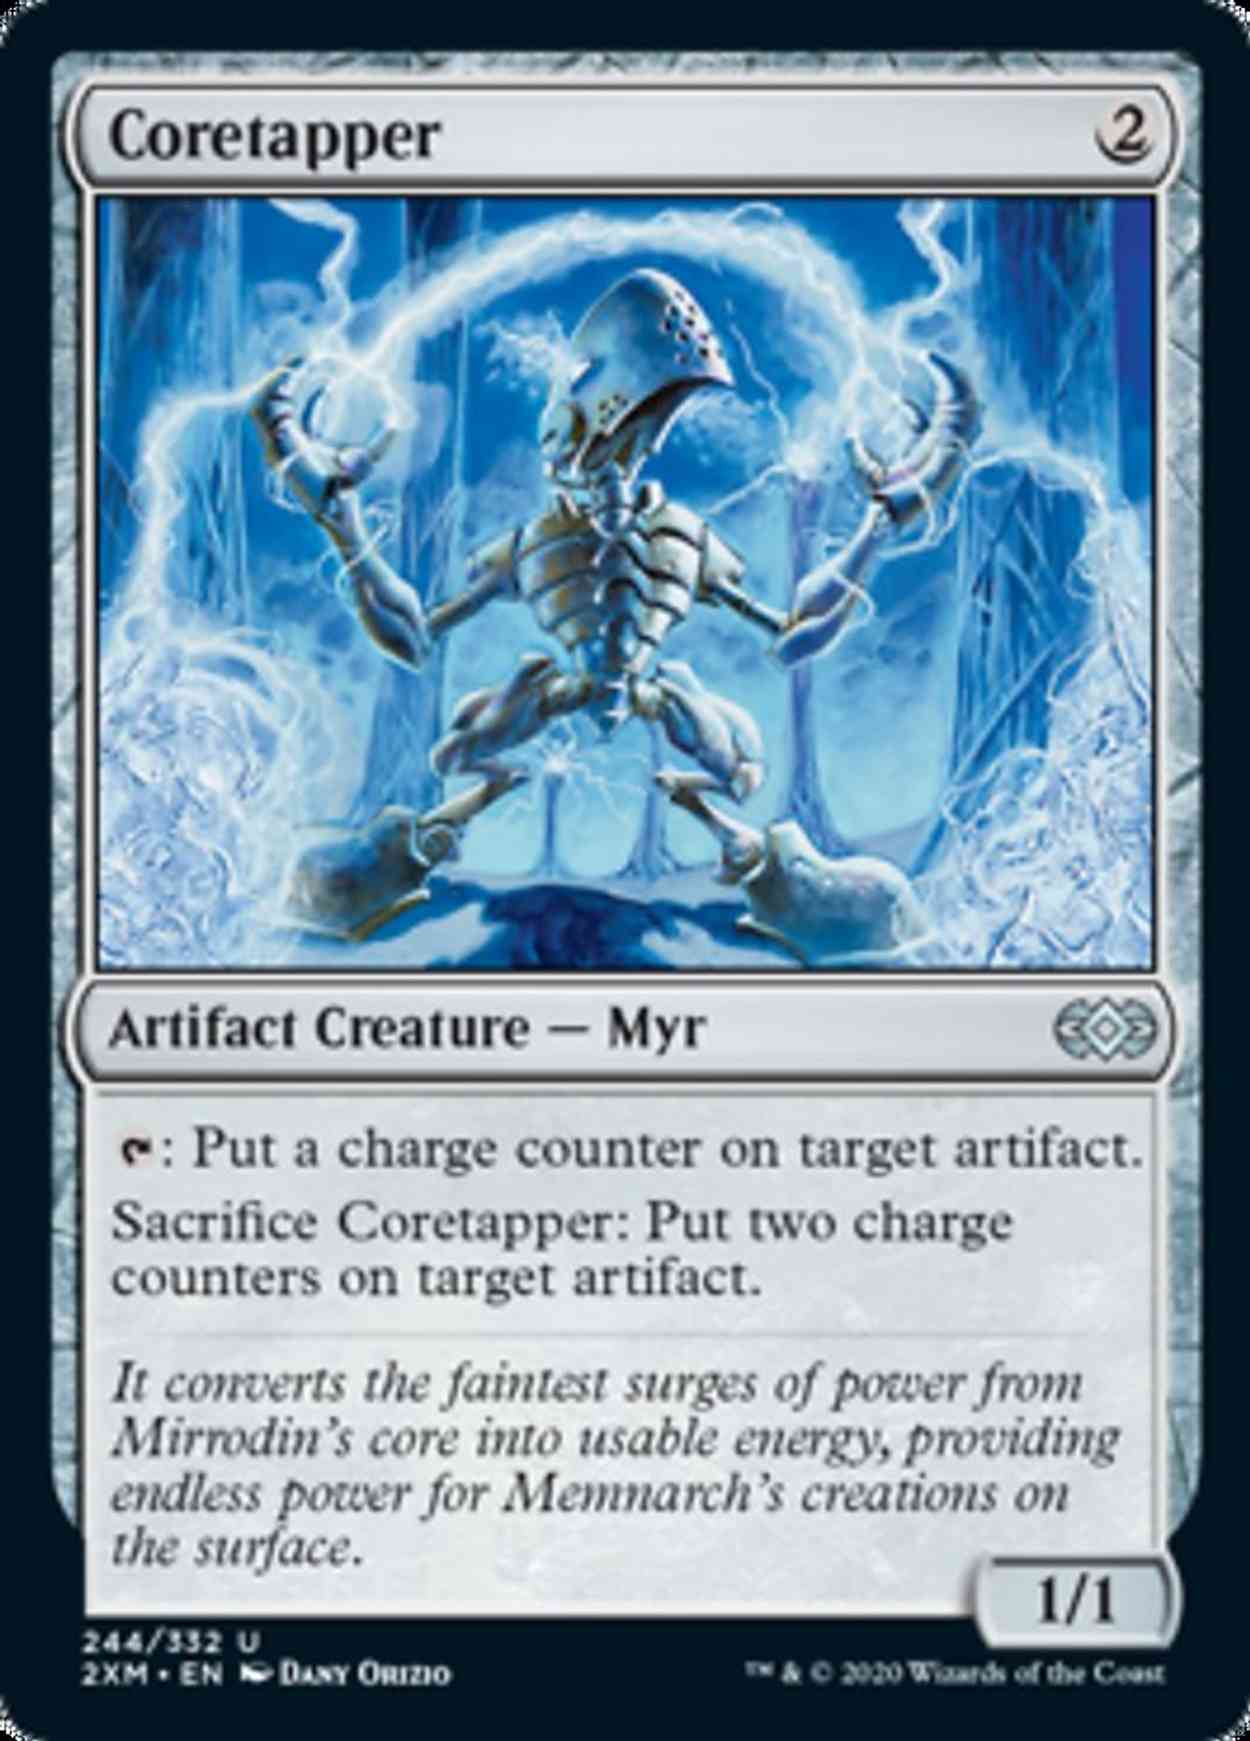 Coretapper magic card front